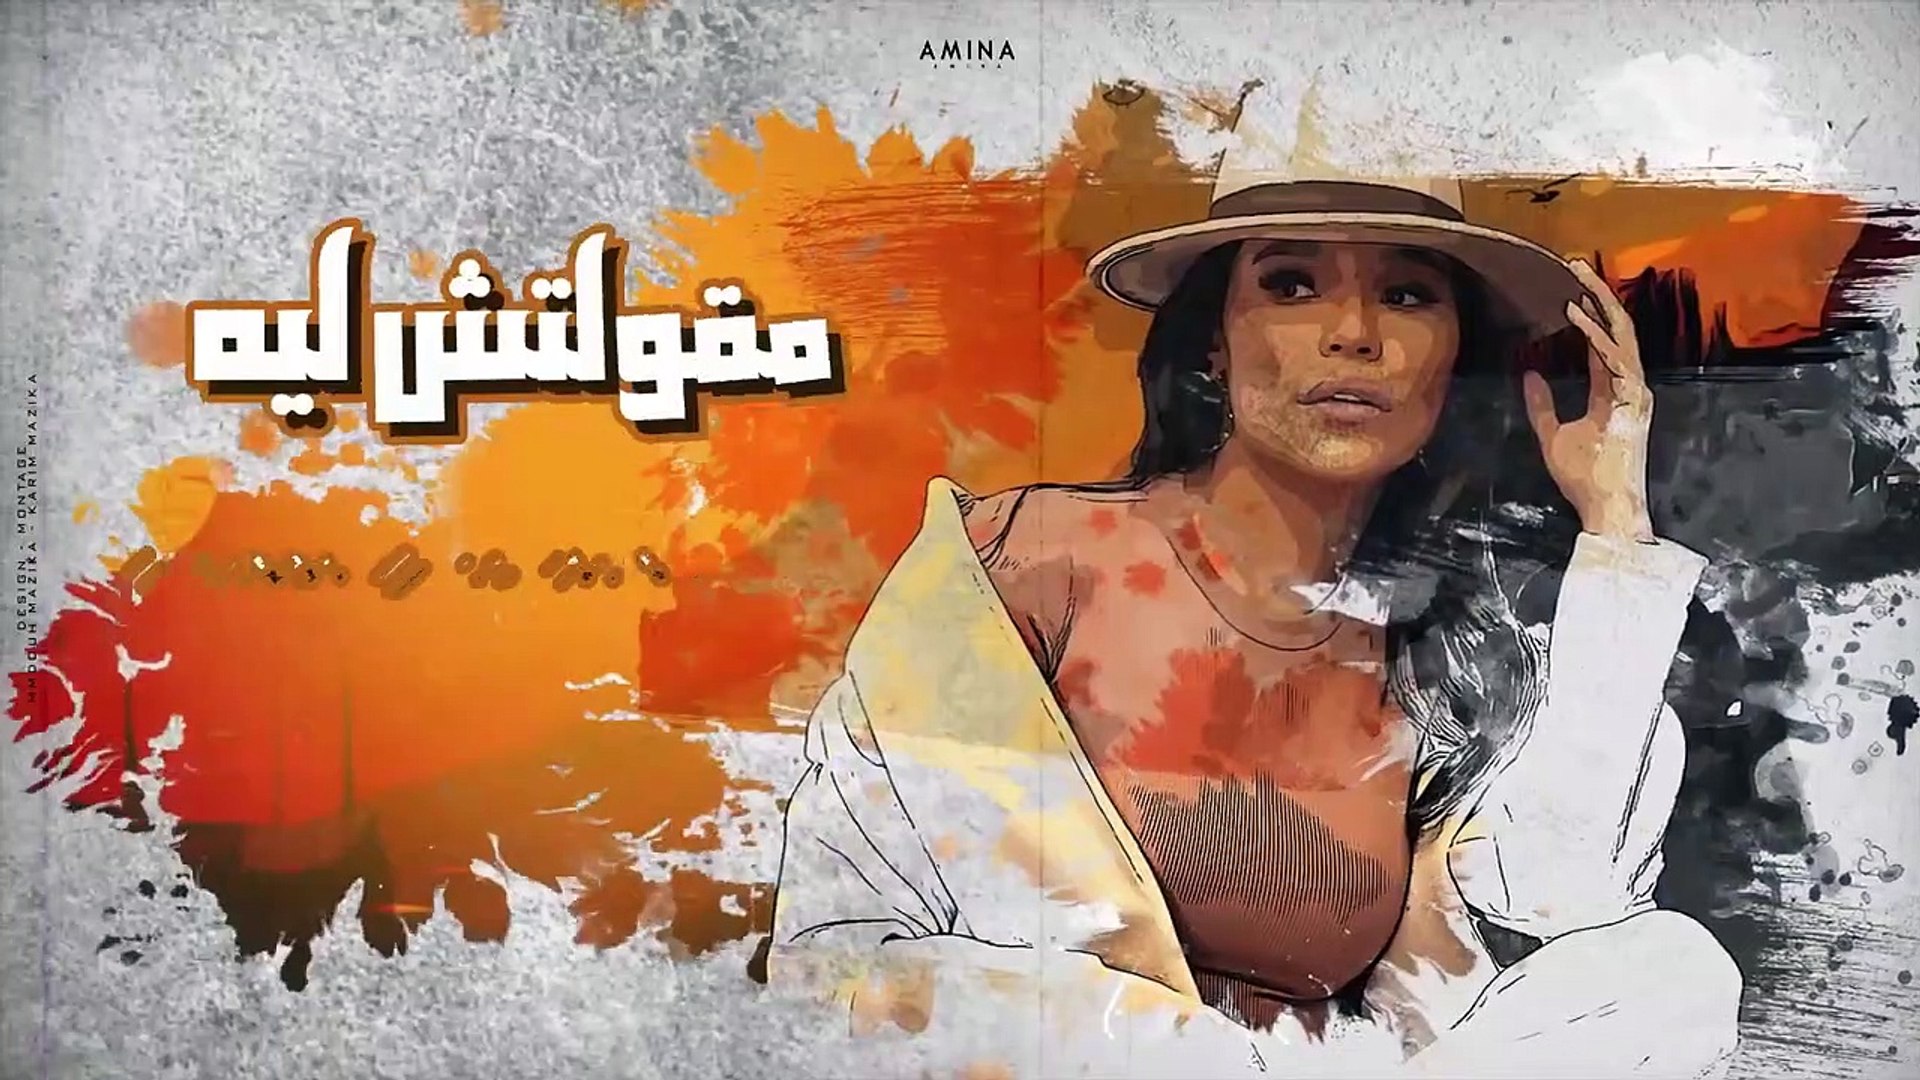 كل سنه وانت خاين - نسيت زمان لما وعدت - امينه ( Lyrics Video ) Amina - Ma3a  El Slama - فيديو Dailymotion